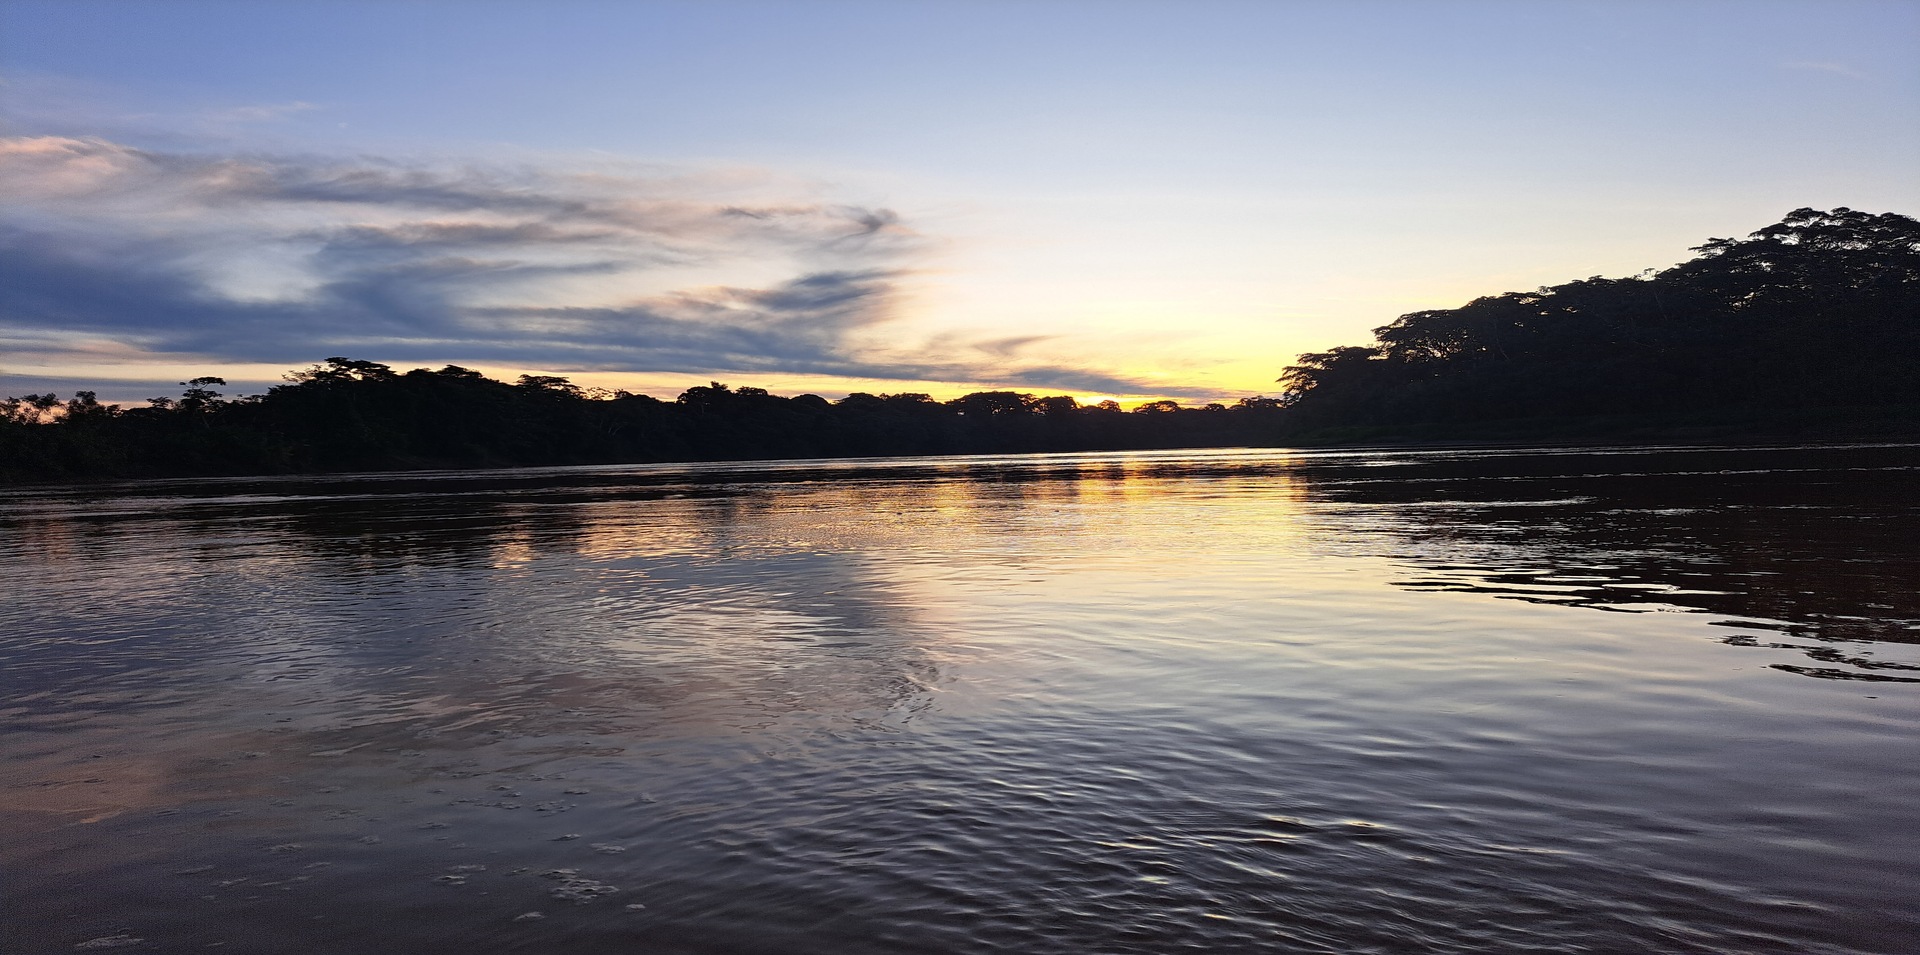 Tambopata river skyview in Peruvian Amazon